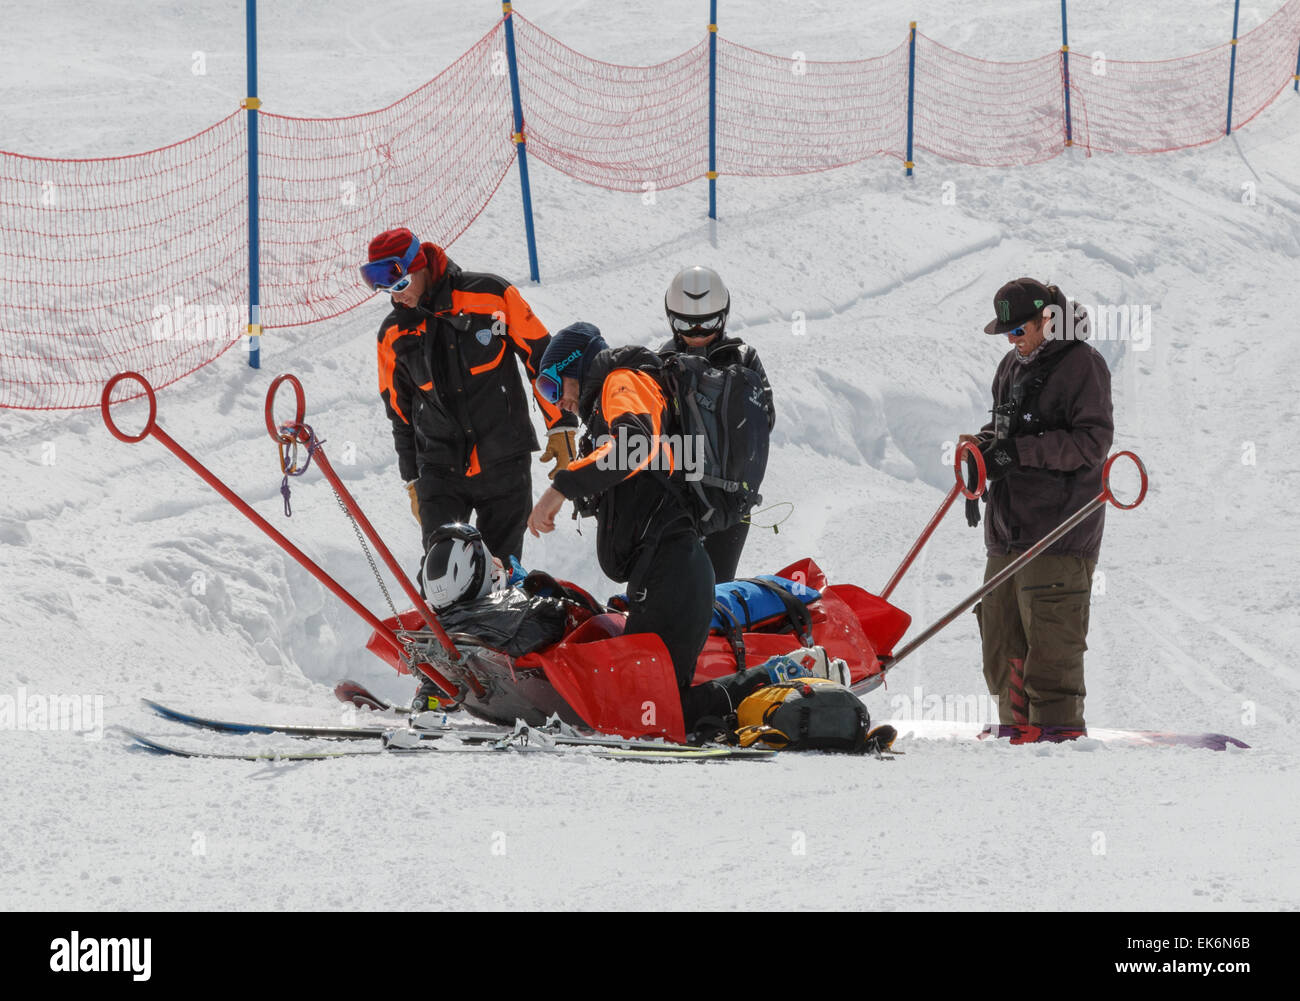 Un skieur blessé sur un traîneau de sauvetage après avoir été aidé par la patrouille de ski dans les alpes ski après une chute sur une pente de ski. Banque D'Images